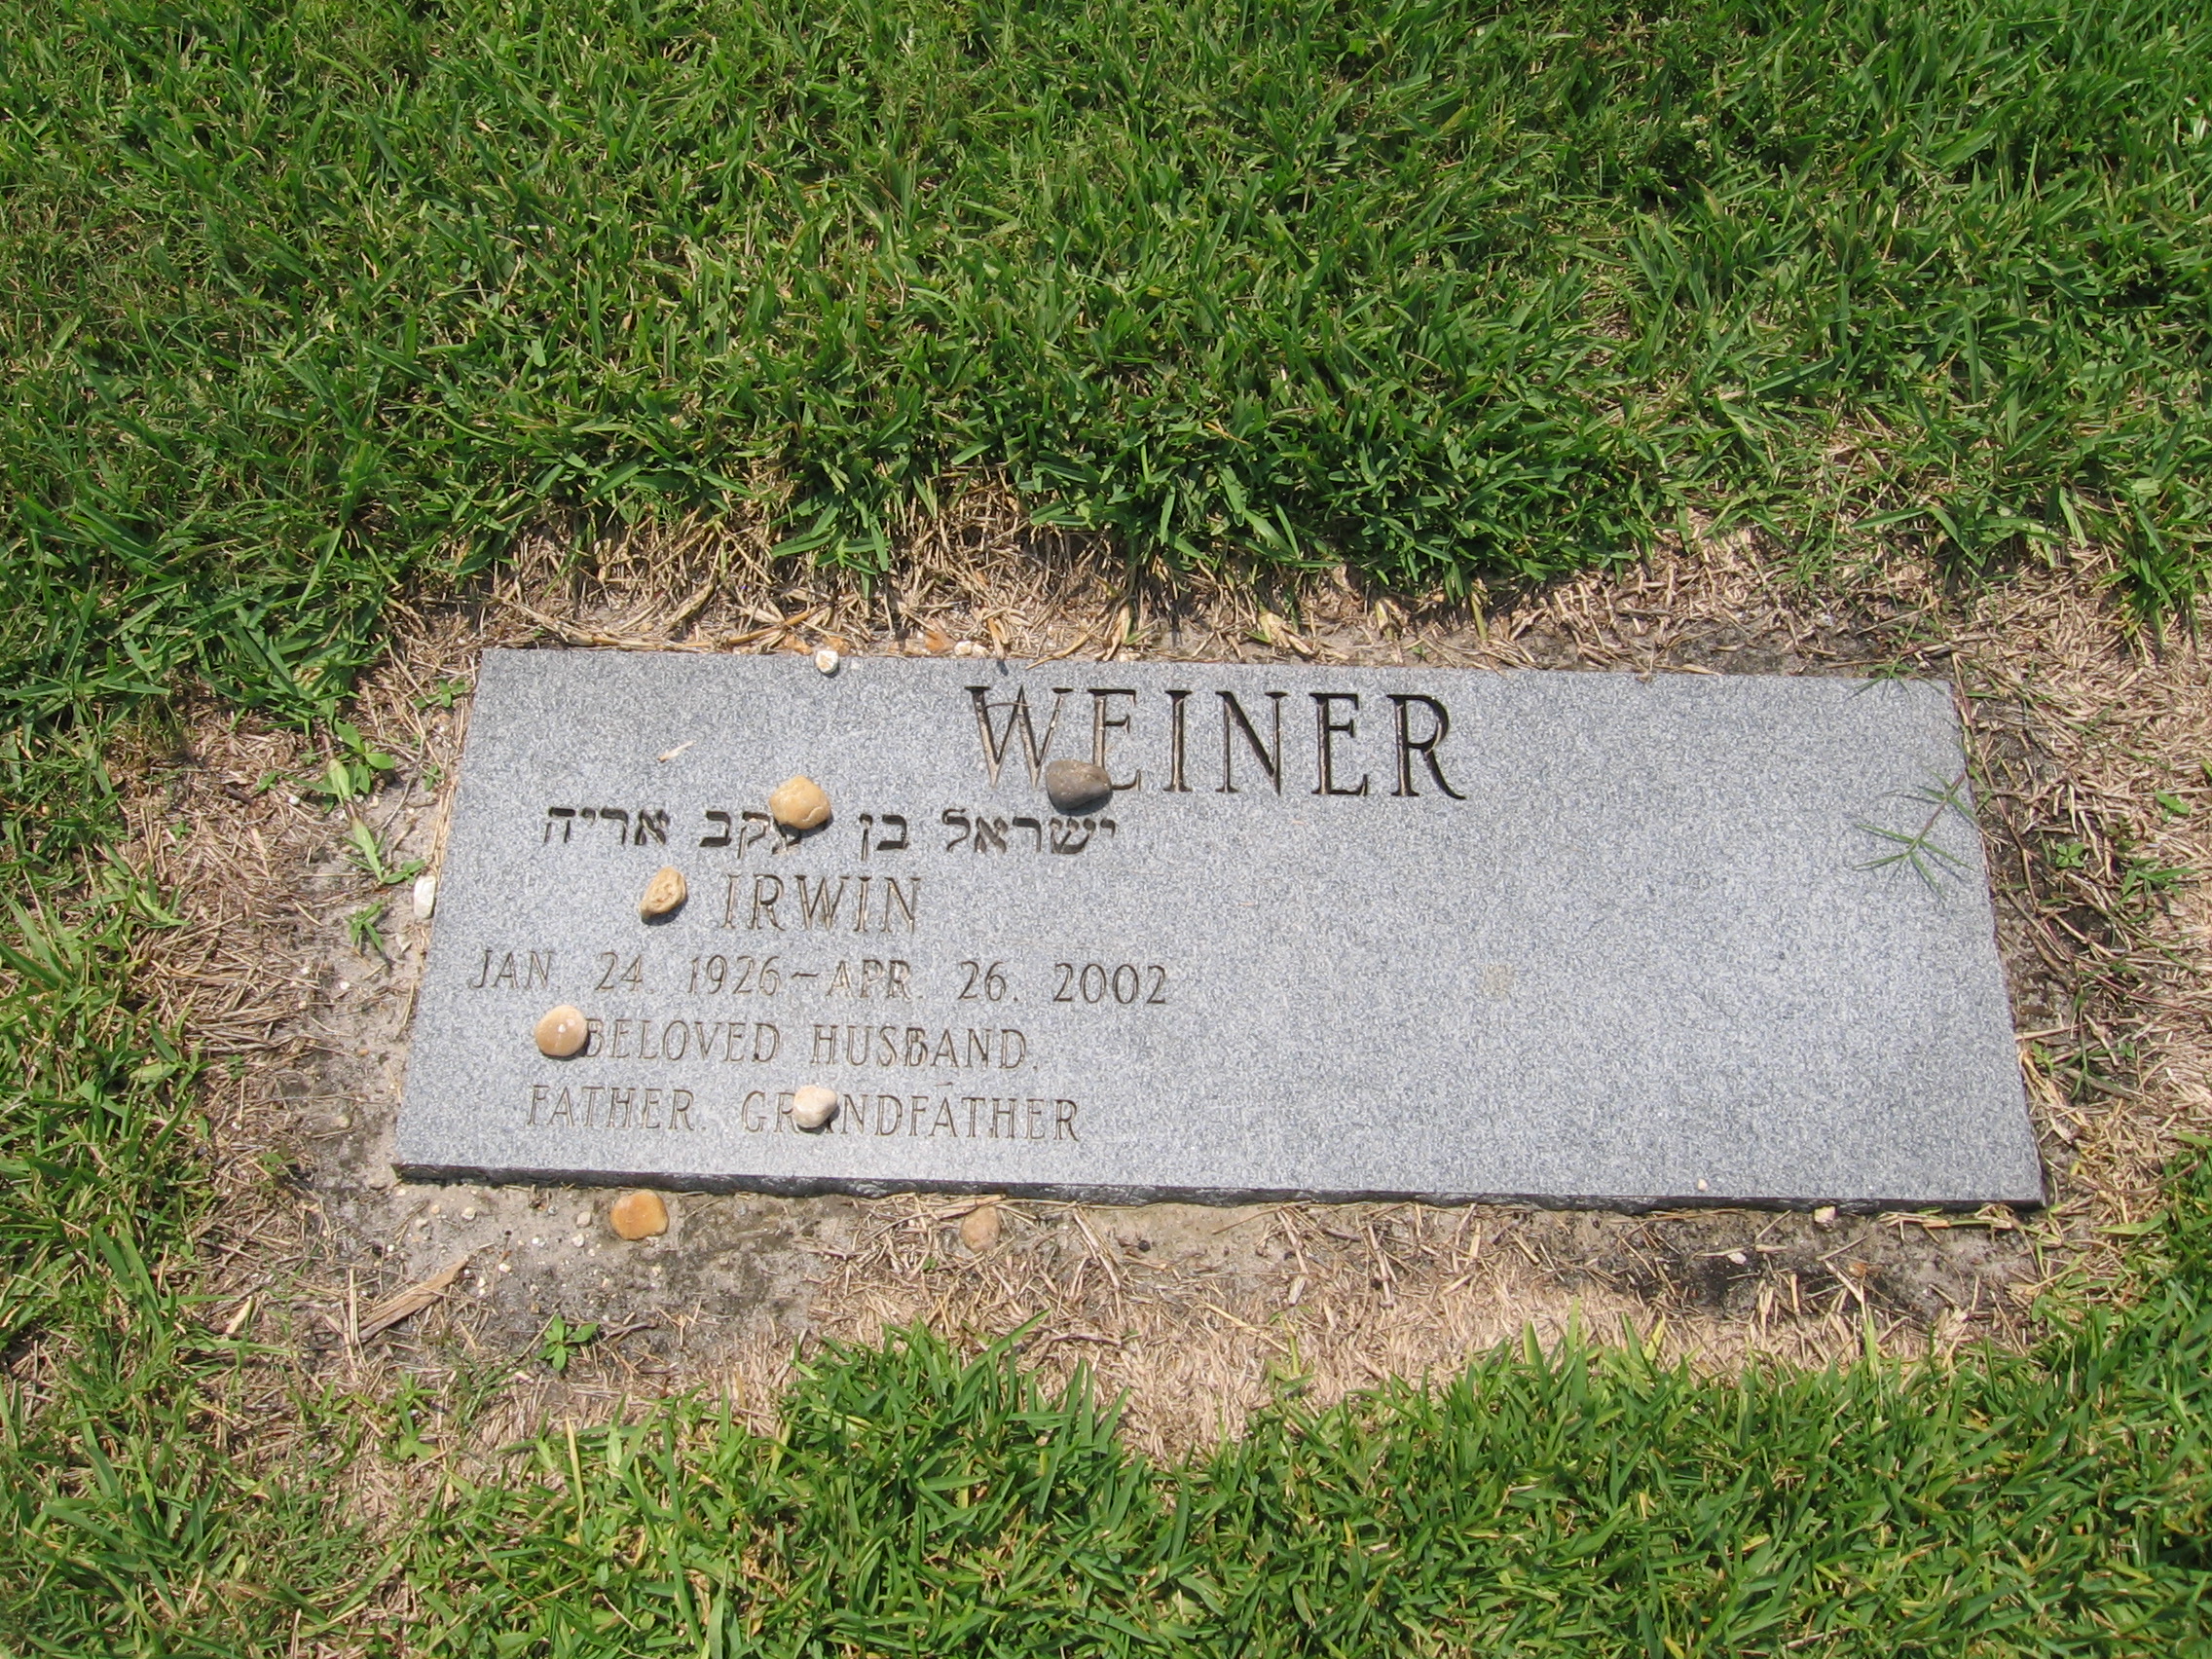 Irwin Weiner